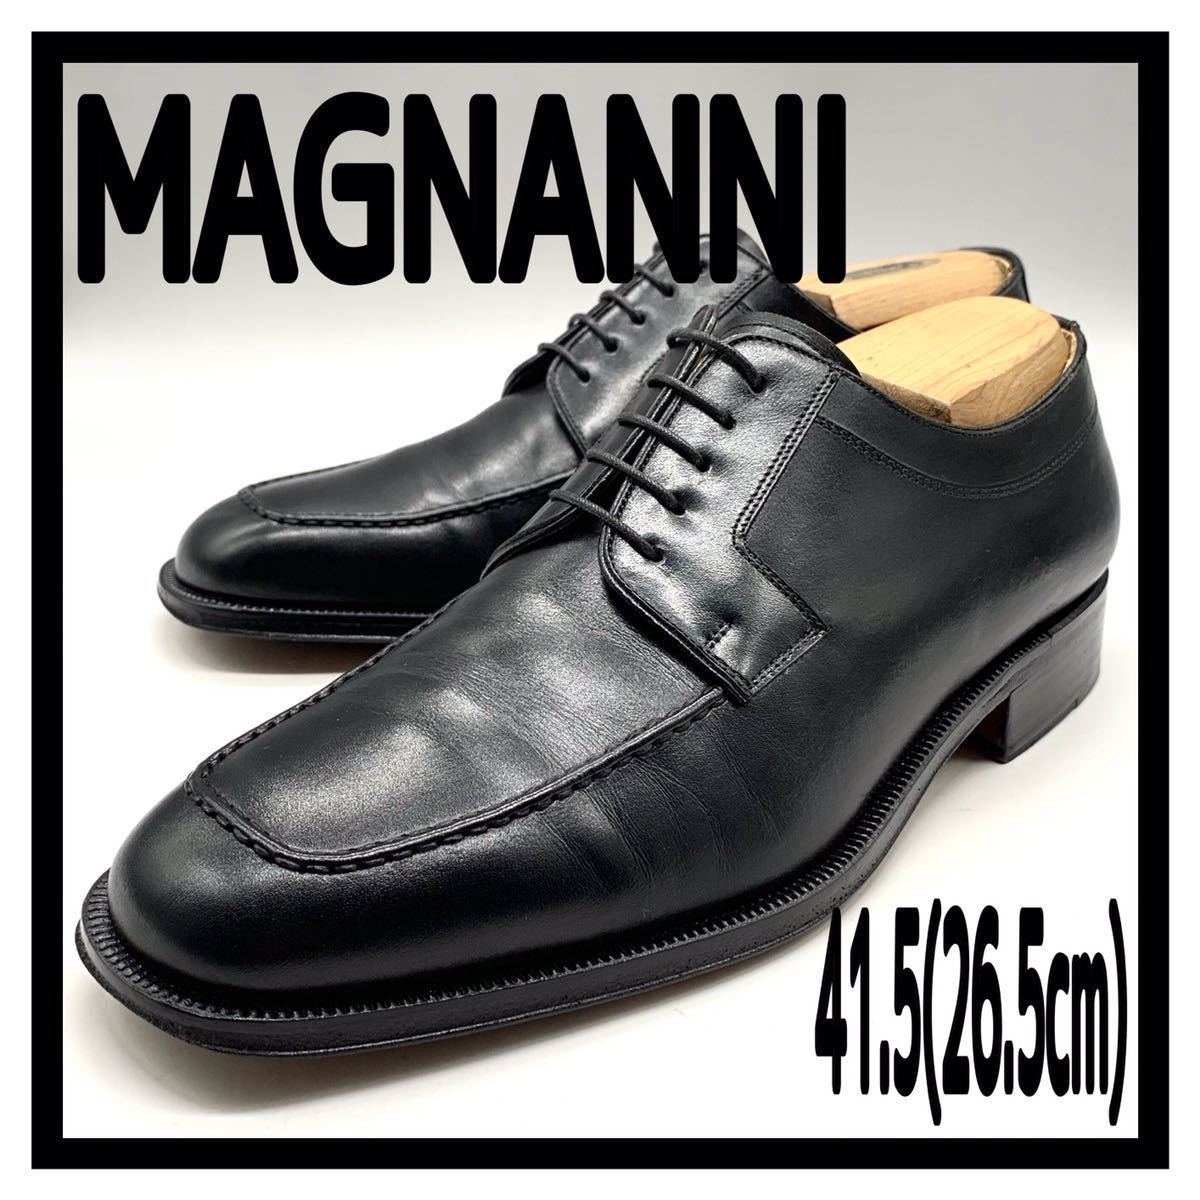 MAGNANNI (マグナーニ) ドレスシューズ Uチップ レースアップ ビジネスシューズ ブラック 黒 41.5 26.5cm 革靴 スペイン製  メンズ